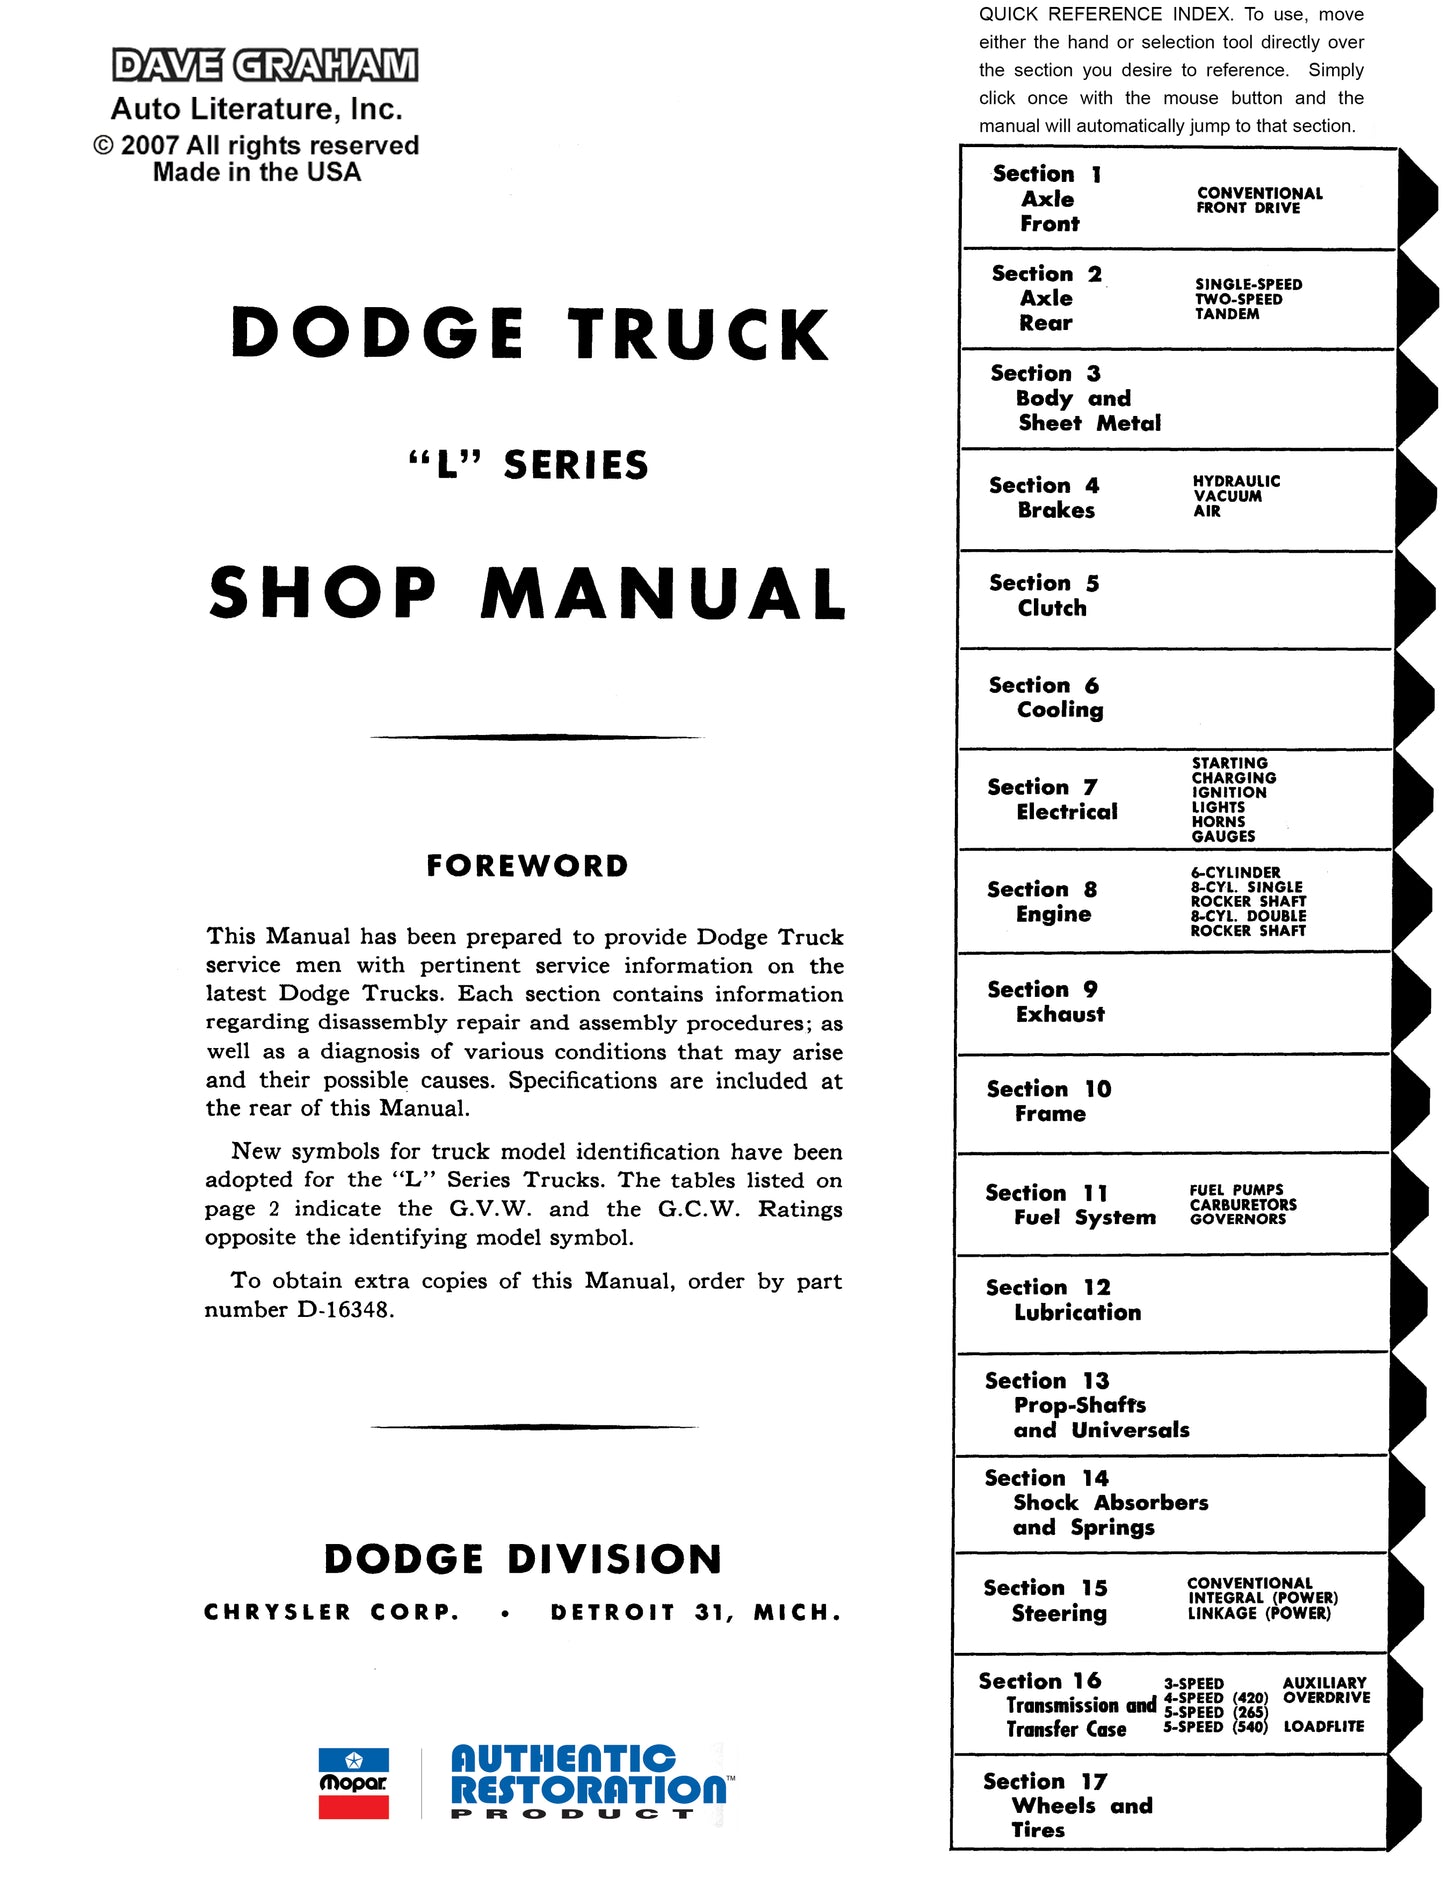 1958-1959 Dodge Truck Manual - All Models